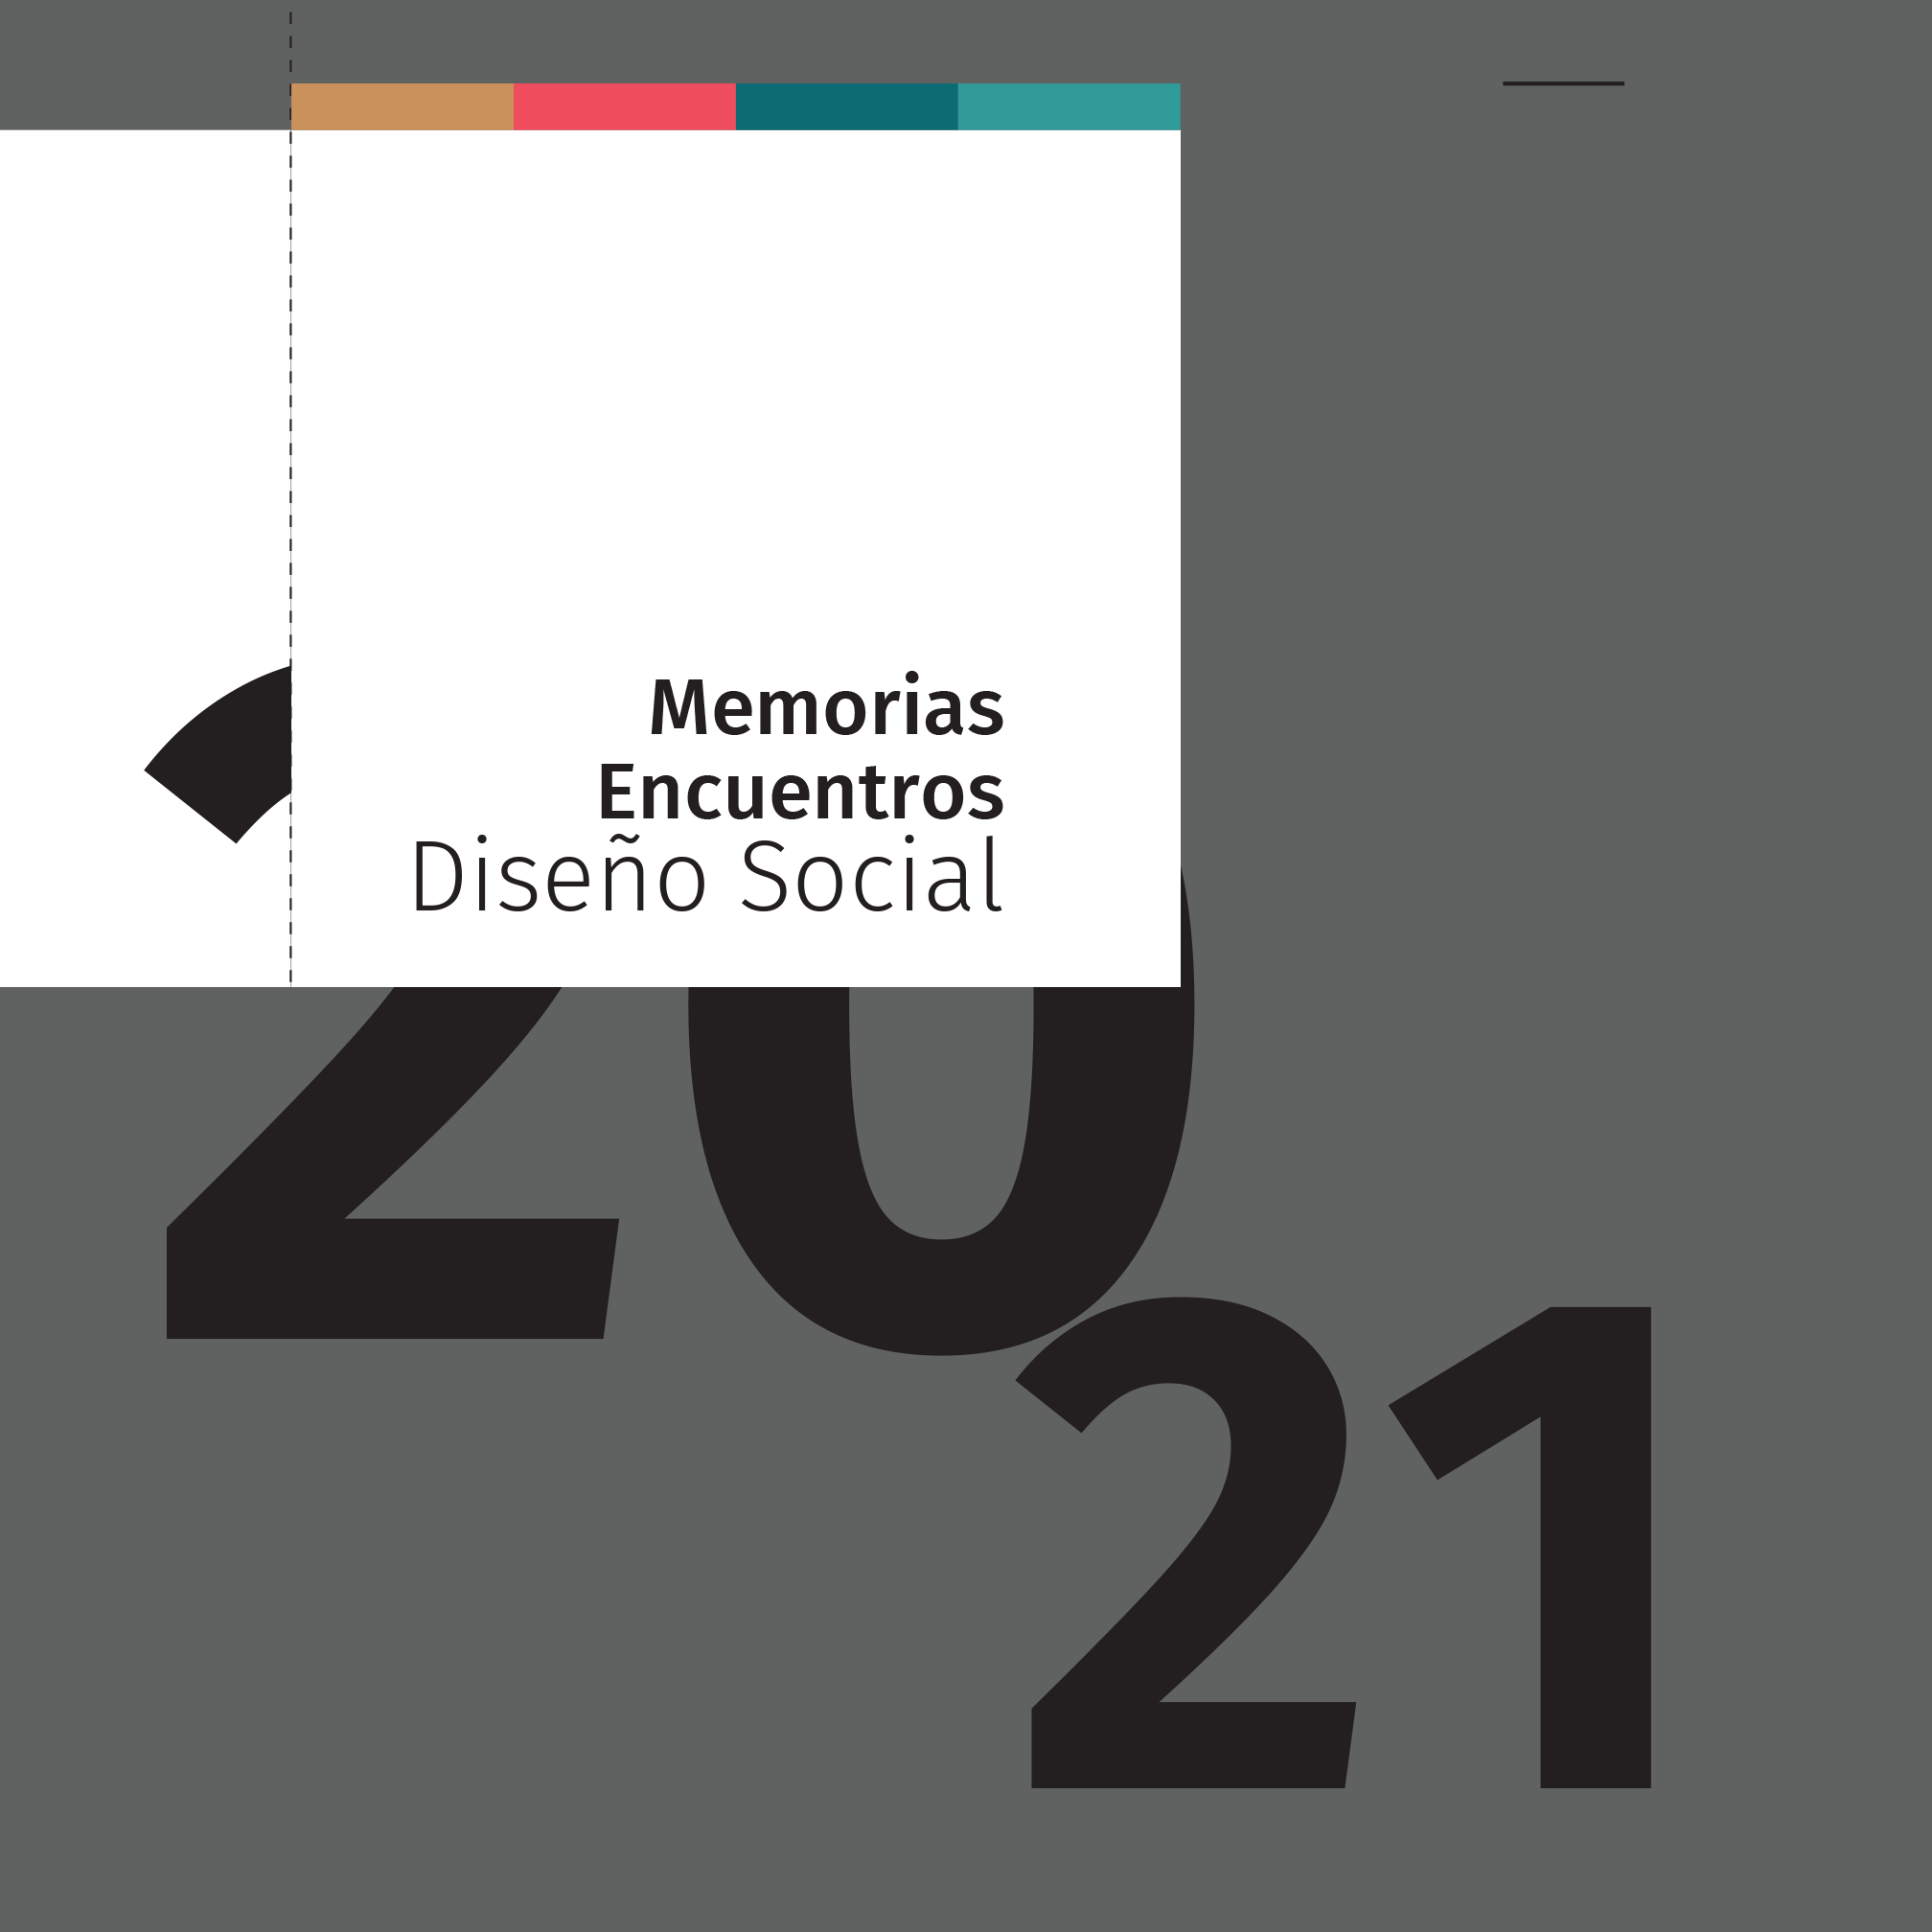 Encuentros Diseño Social 2021